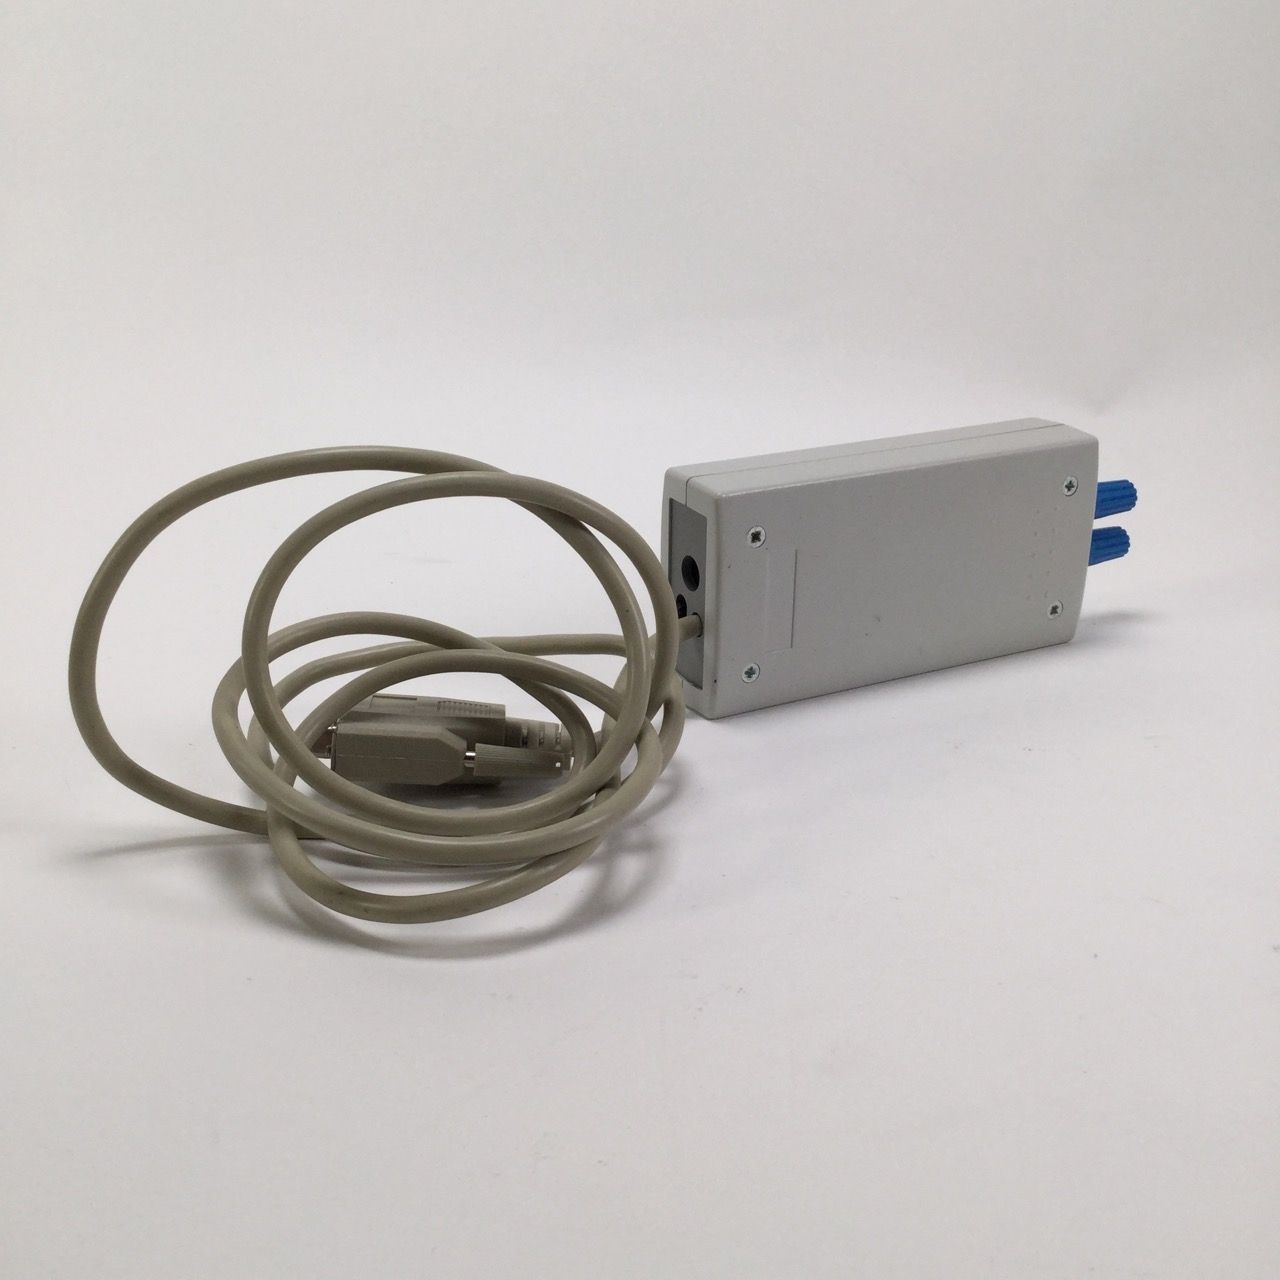 Endress+Hauser FXA191-G1 Commubox Interface USB/HART modem New NFP